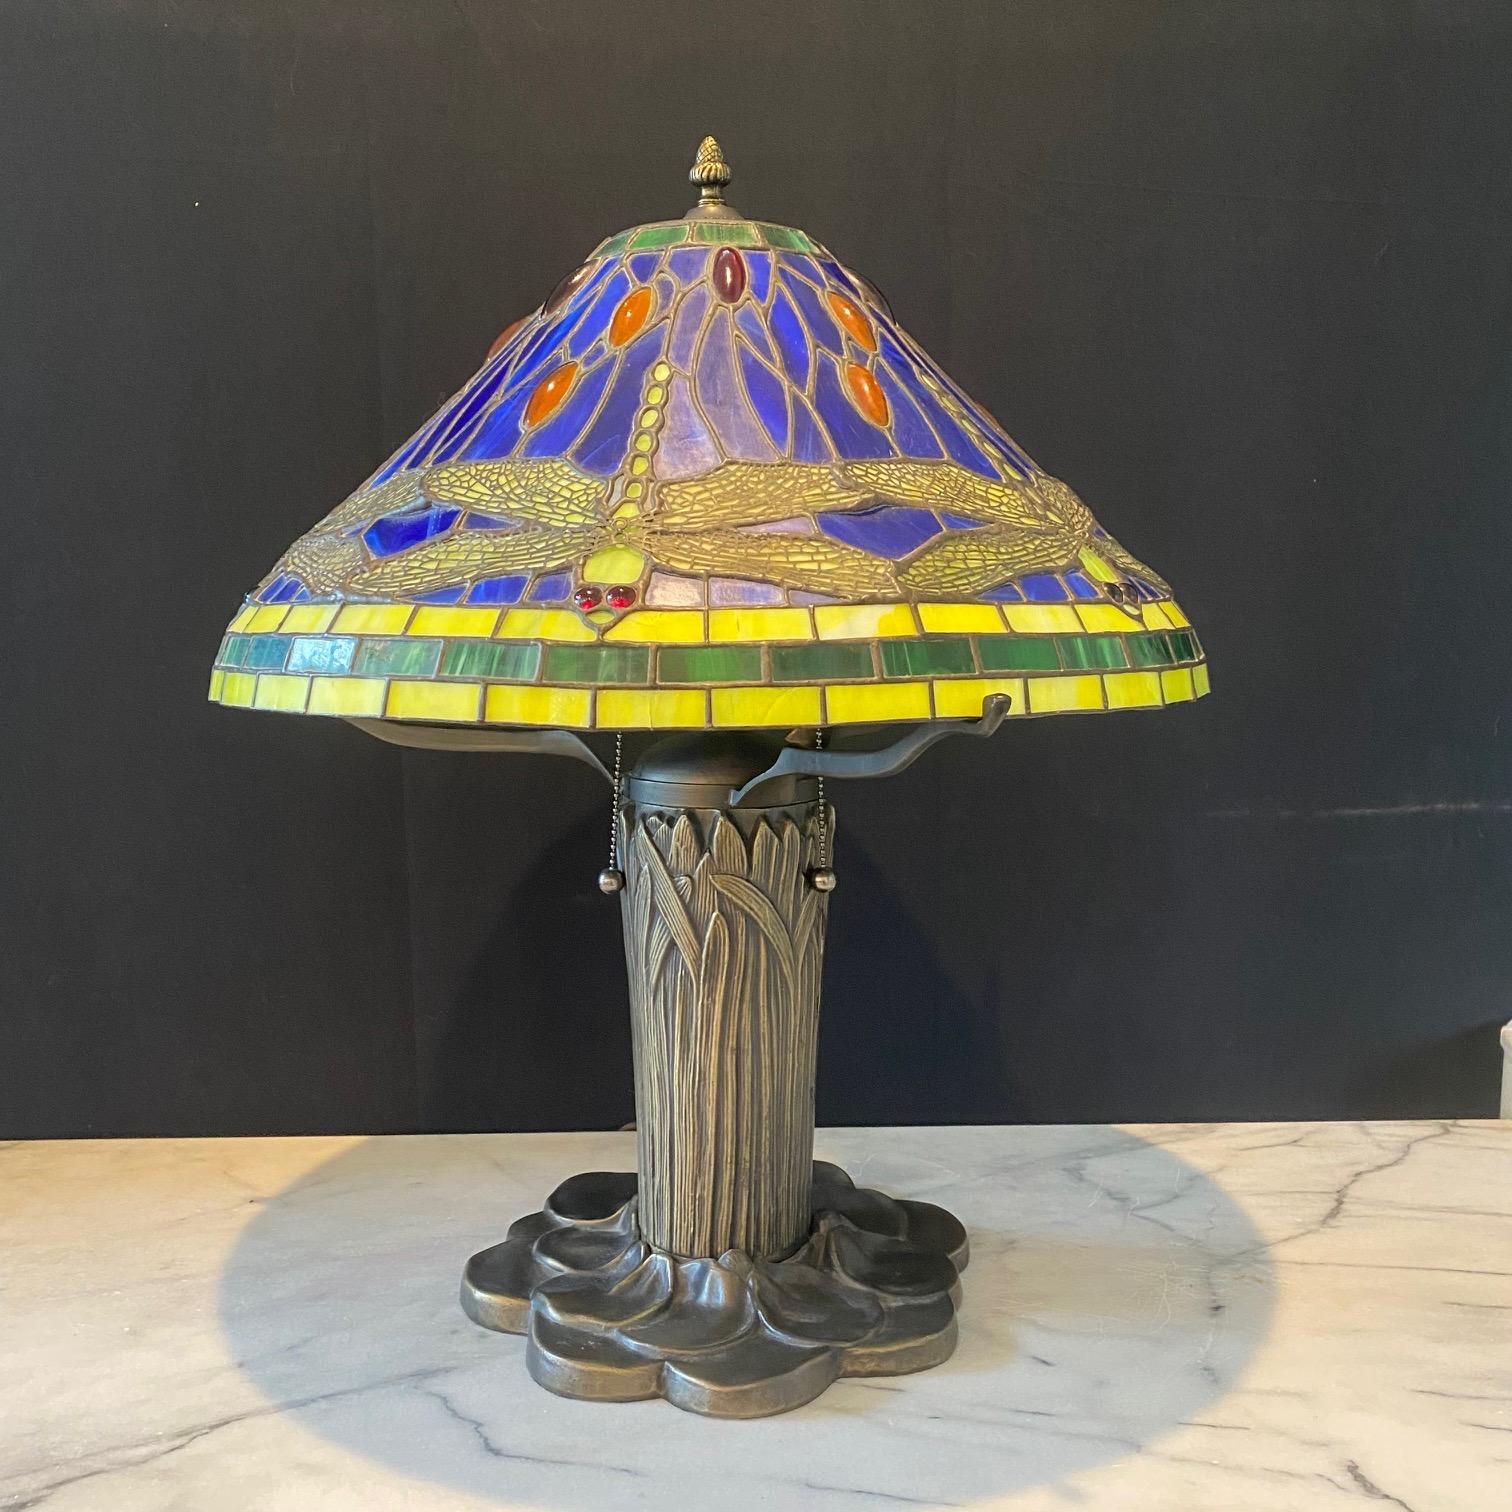  Jugendstil-Tischlampe im Tiffany-Stil mit Bleiglasschirm im Libellendesign mit Buntglasscheiben und Bronzesockel aus Katzenschwanz. Eine schöne Tischlampe aus Buntglas mit einem Sockel in Form eines Seerosenblattes und Rohrkolben, mit einem Schirm